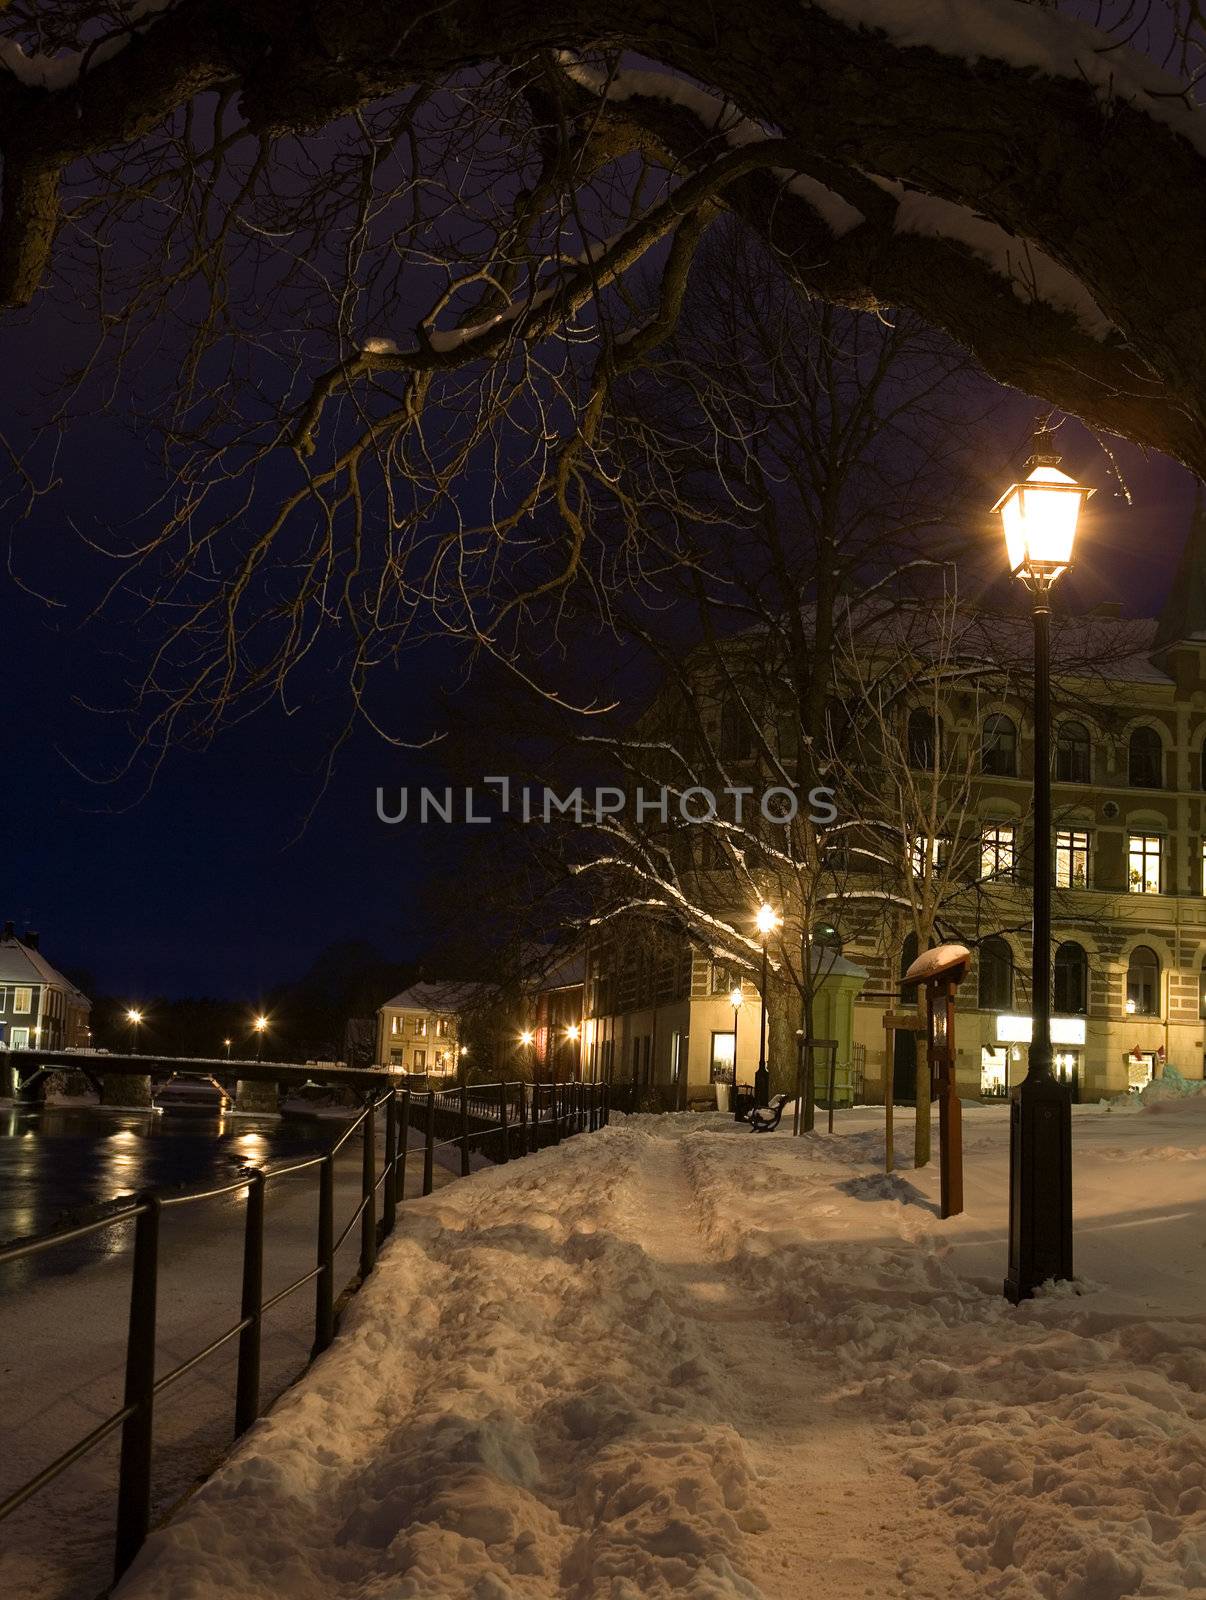 Illuminated street light at winter time